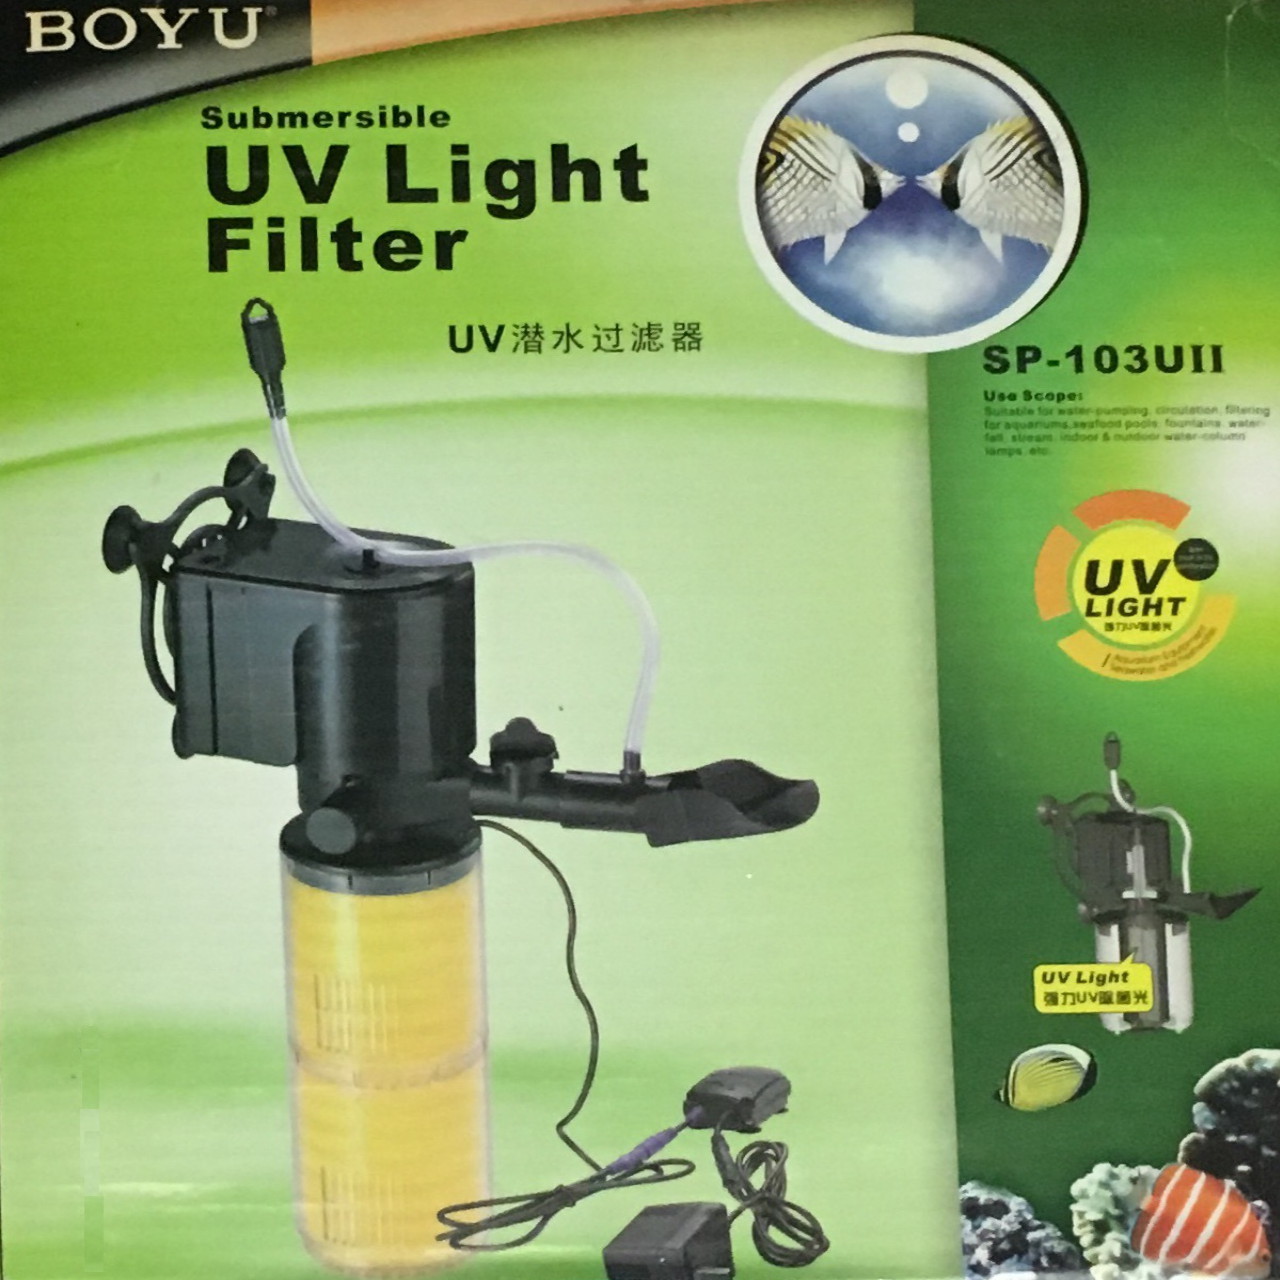 فیلتر داخلی بویو مدل UV LIGHT FILTER SP-103UII